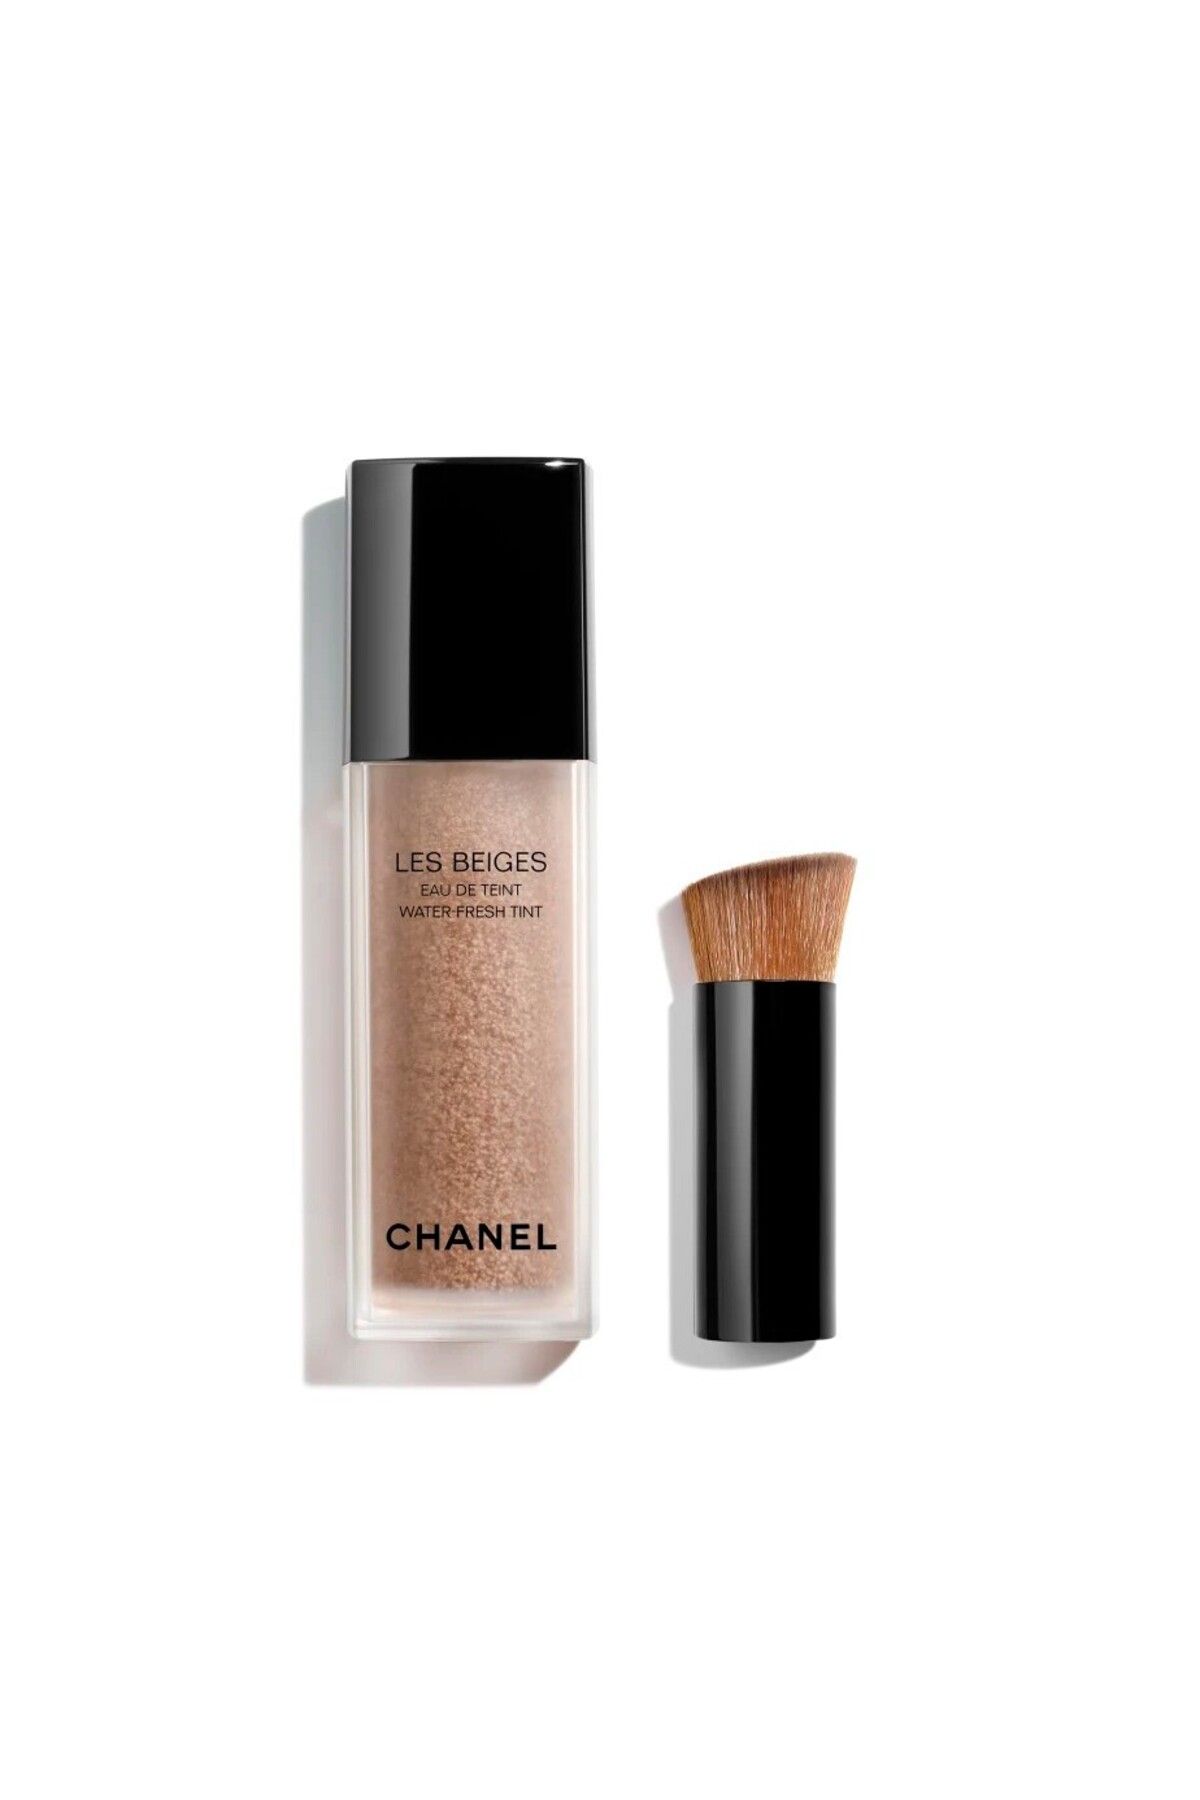 Chanel کرم پودر رقیق و سبک Les Beiges زیبایی طبیعی و درخشان